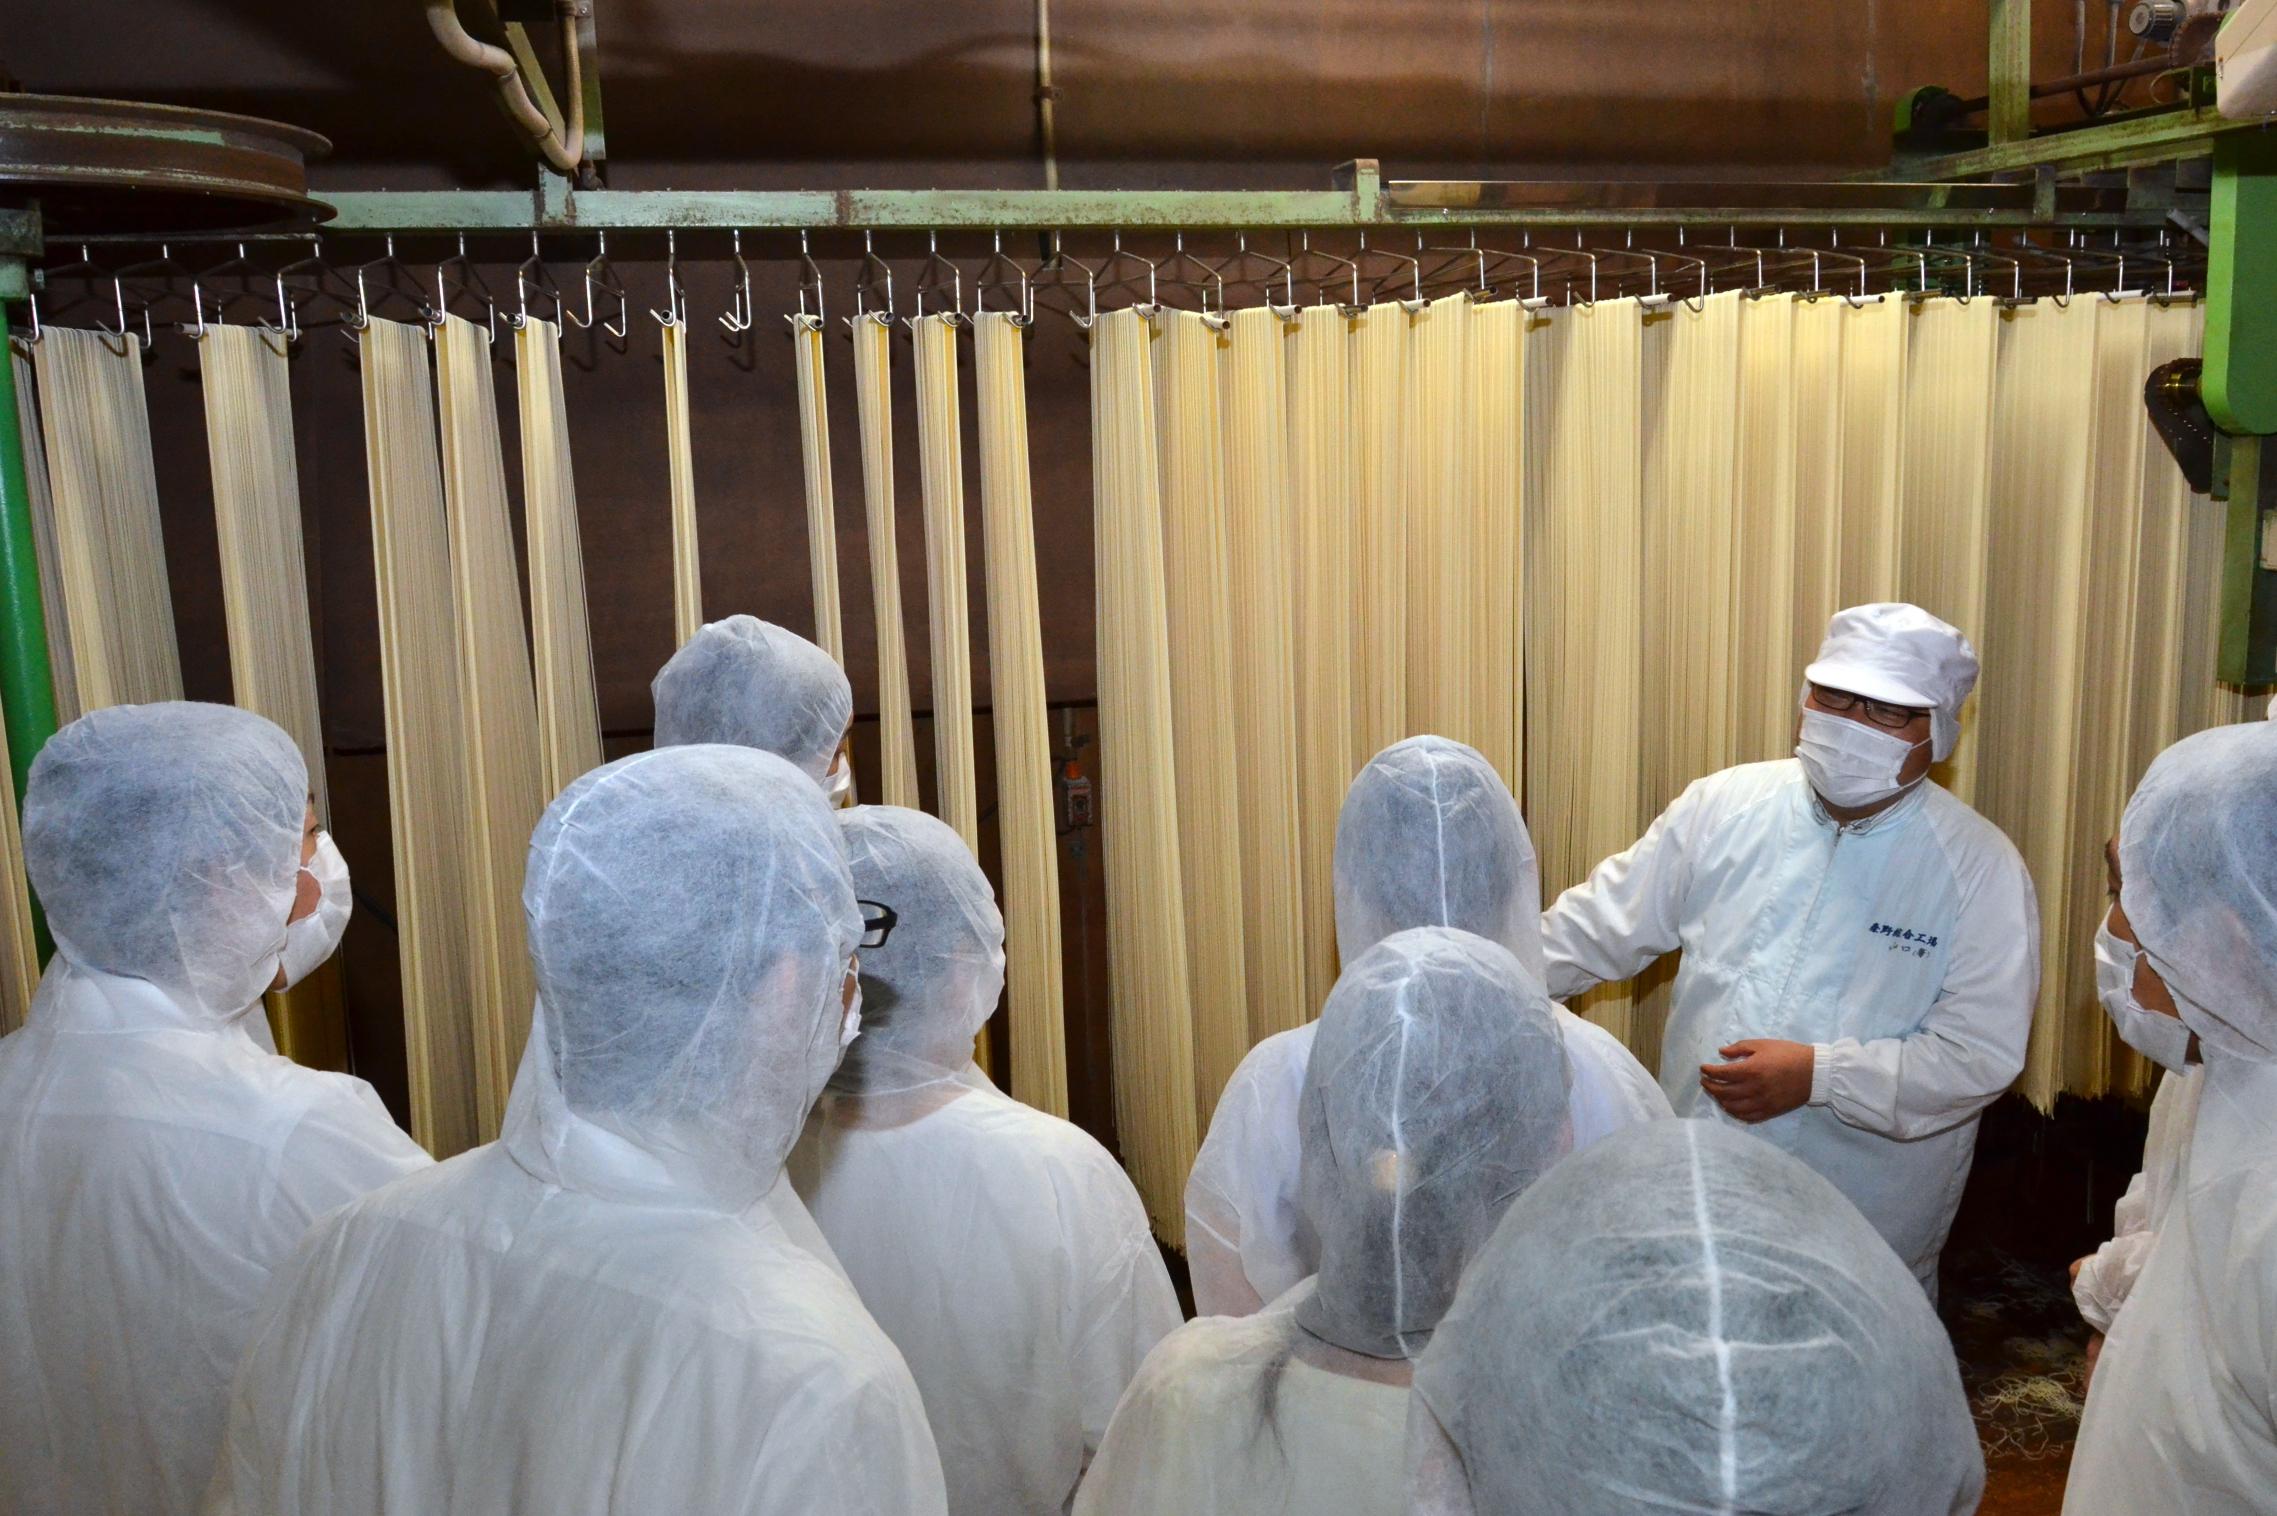 乾麺の乾燥室の衛生管理状況を視察する参加者たち　　　　　　　　　　　　　　　　　　　　